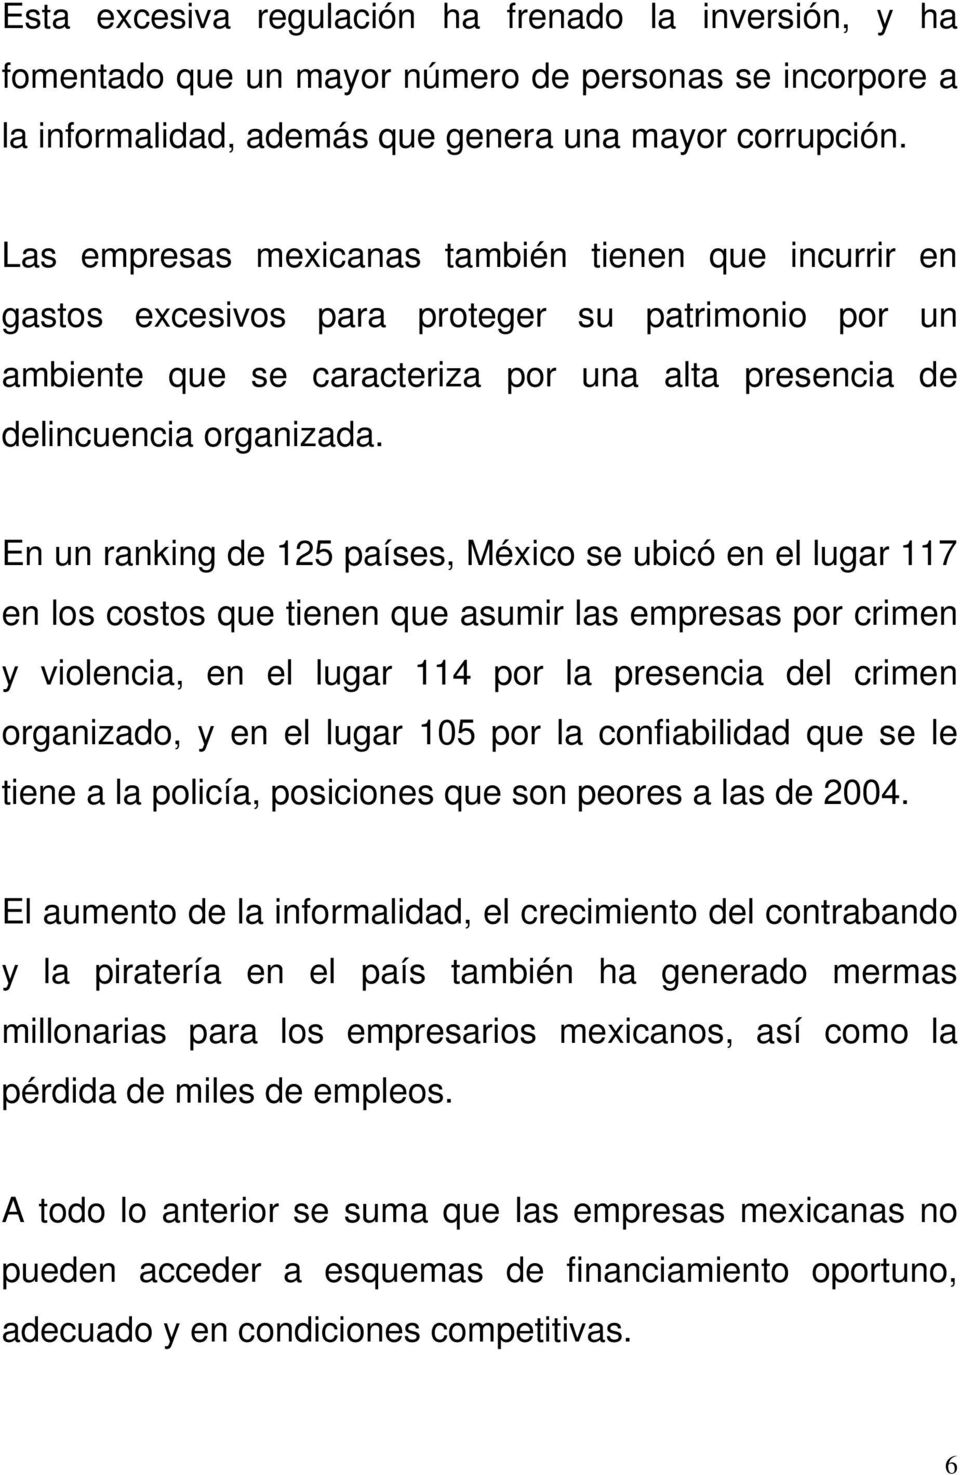 En un ranking de 125 países, México se ubicó en el lugar 117 en los costos que tienen que asumir las empresas por crimen y violencia, en el lugar 114 por la presencia del crimen organizado, y en el